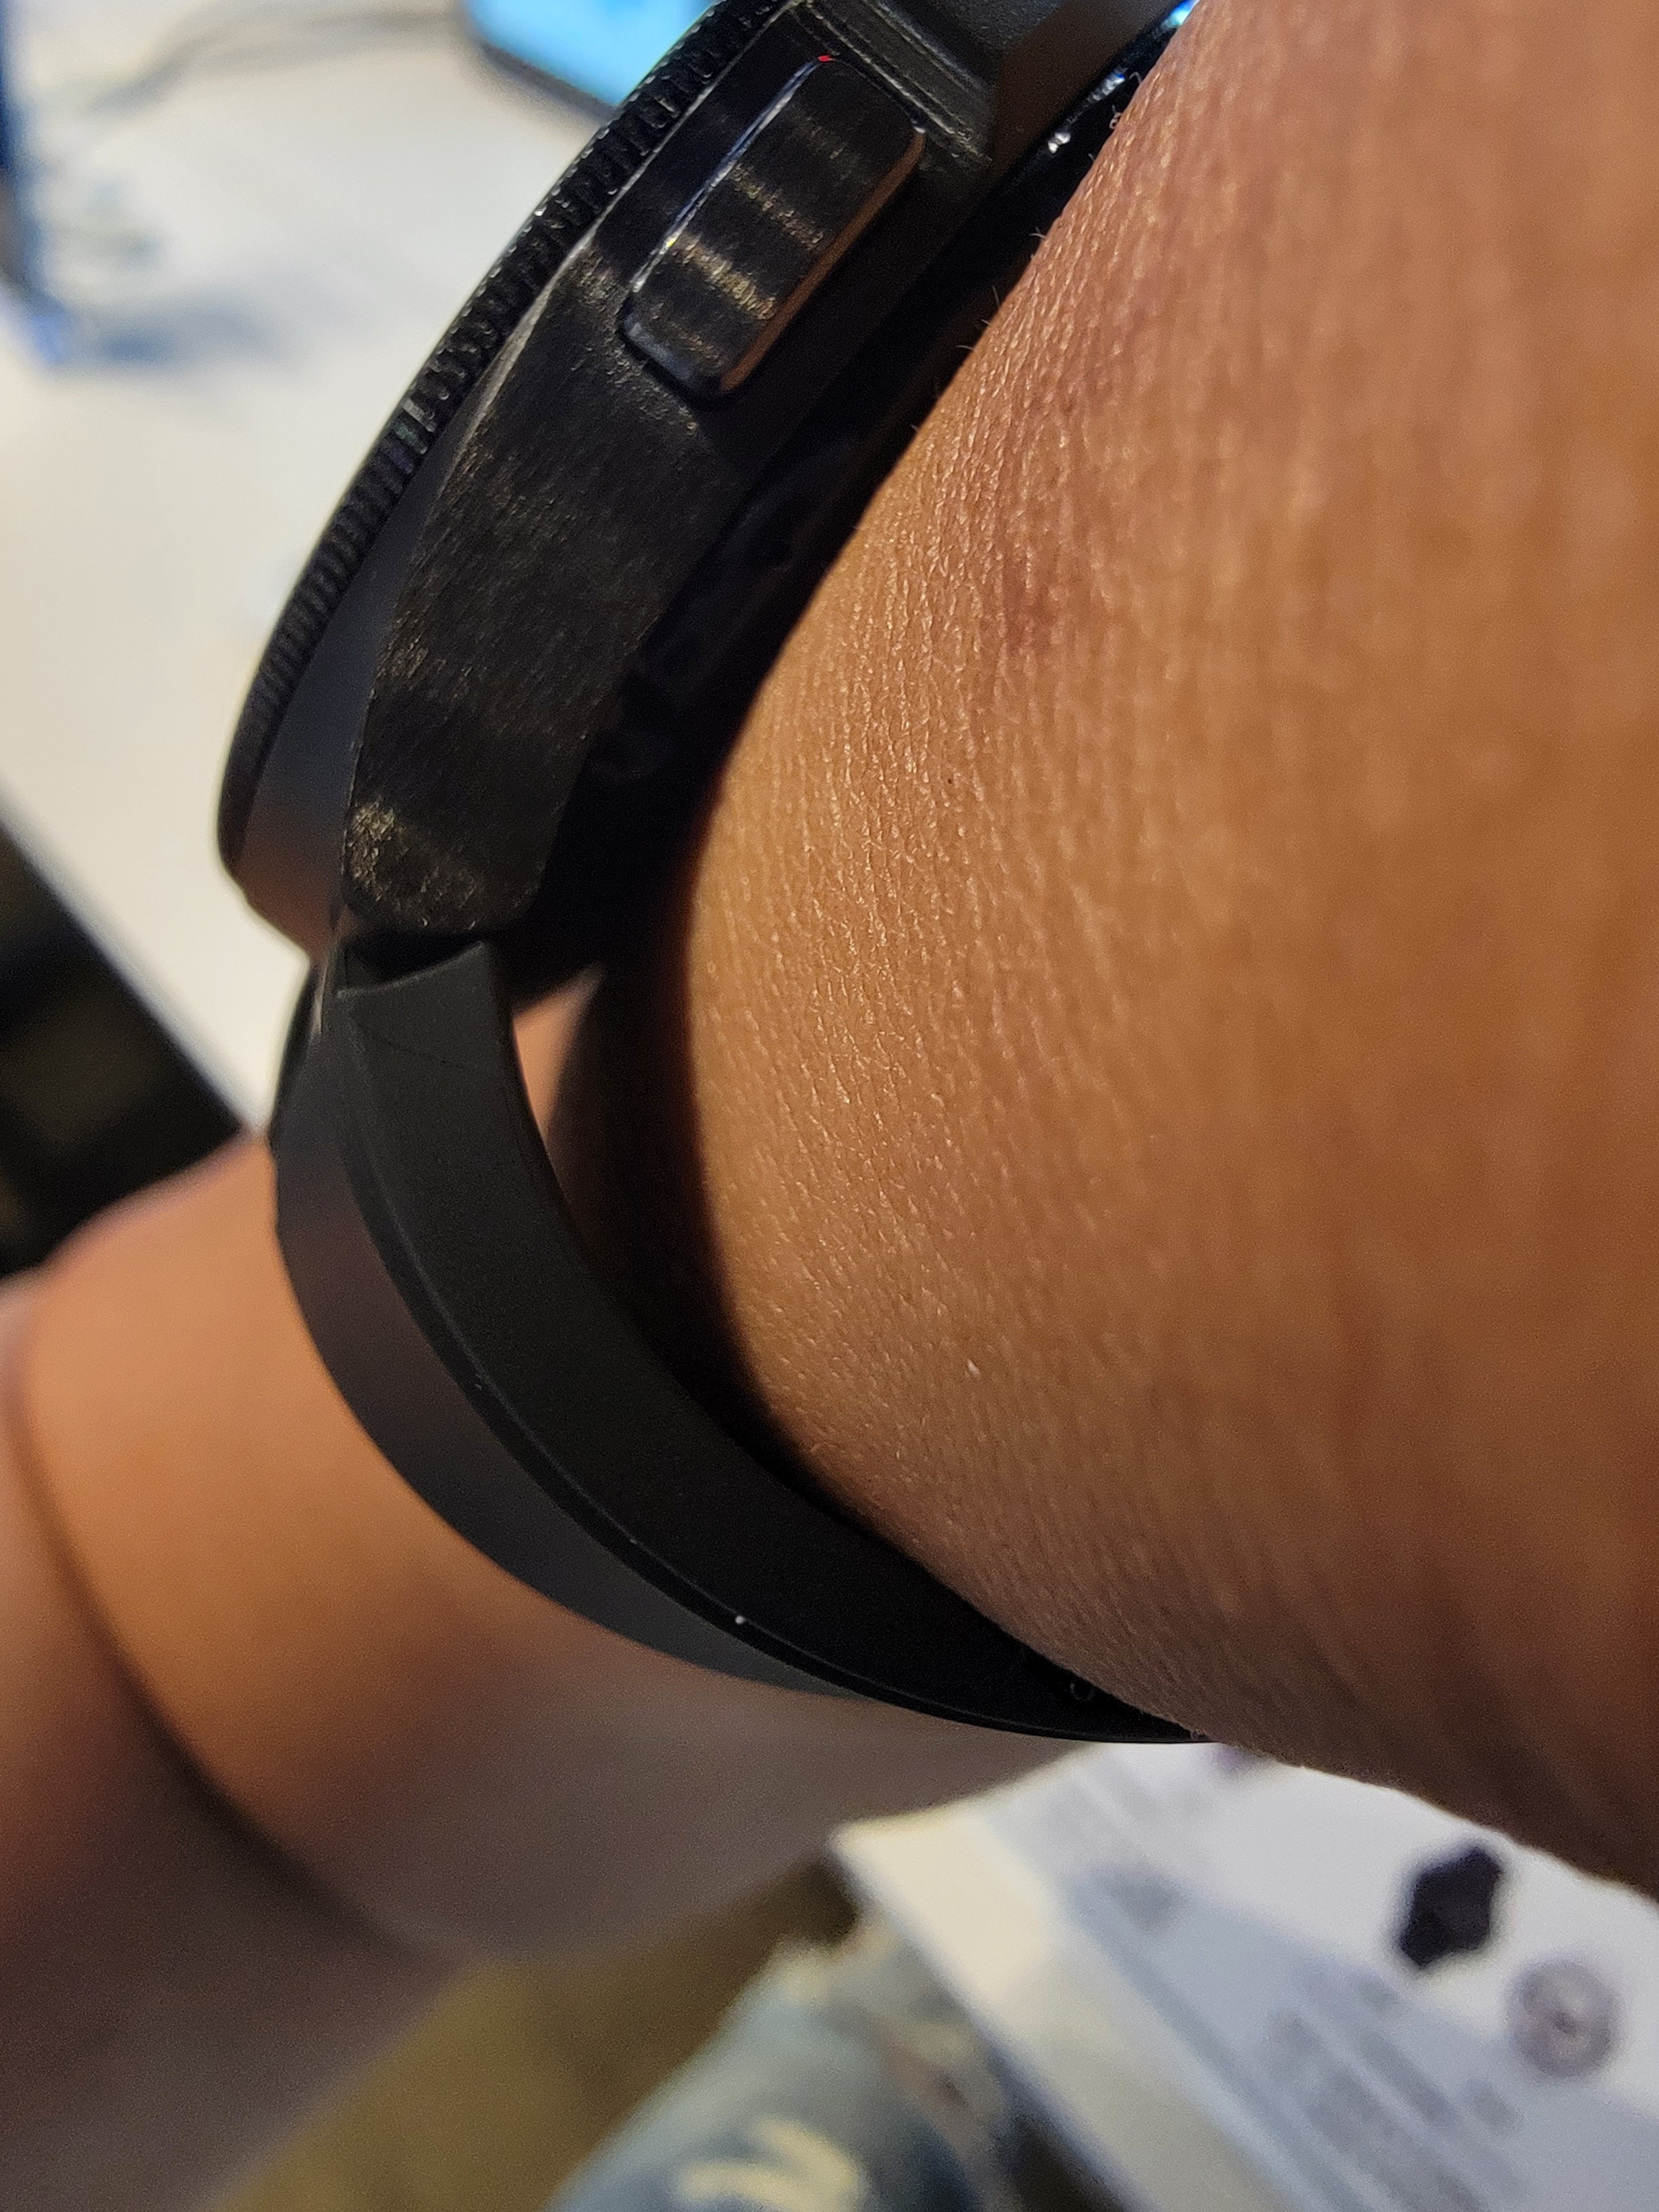 圖 Samsung watch 4 尺寸選擇？